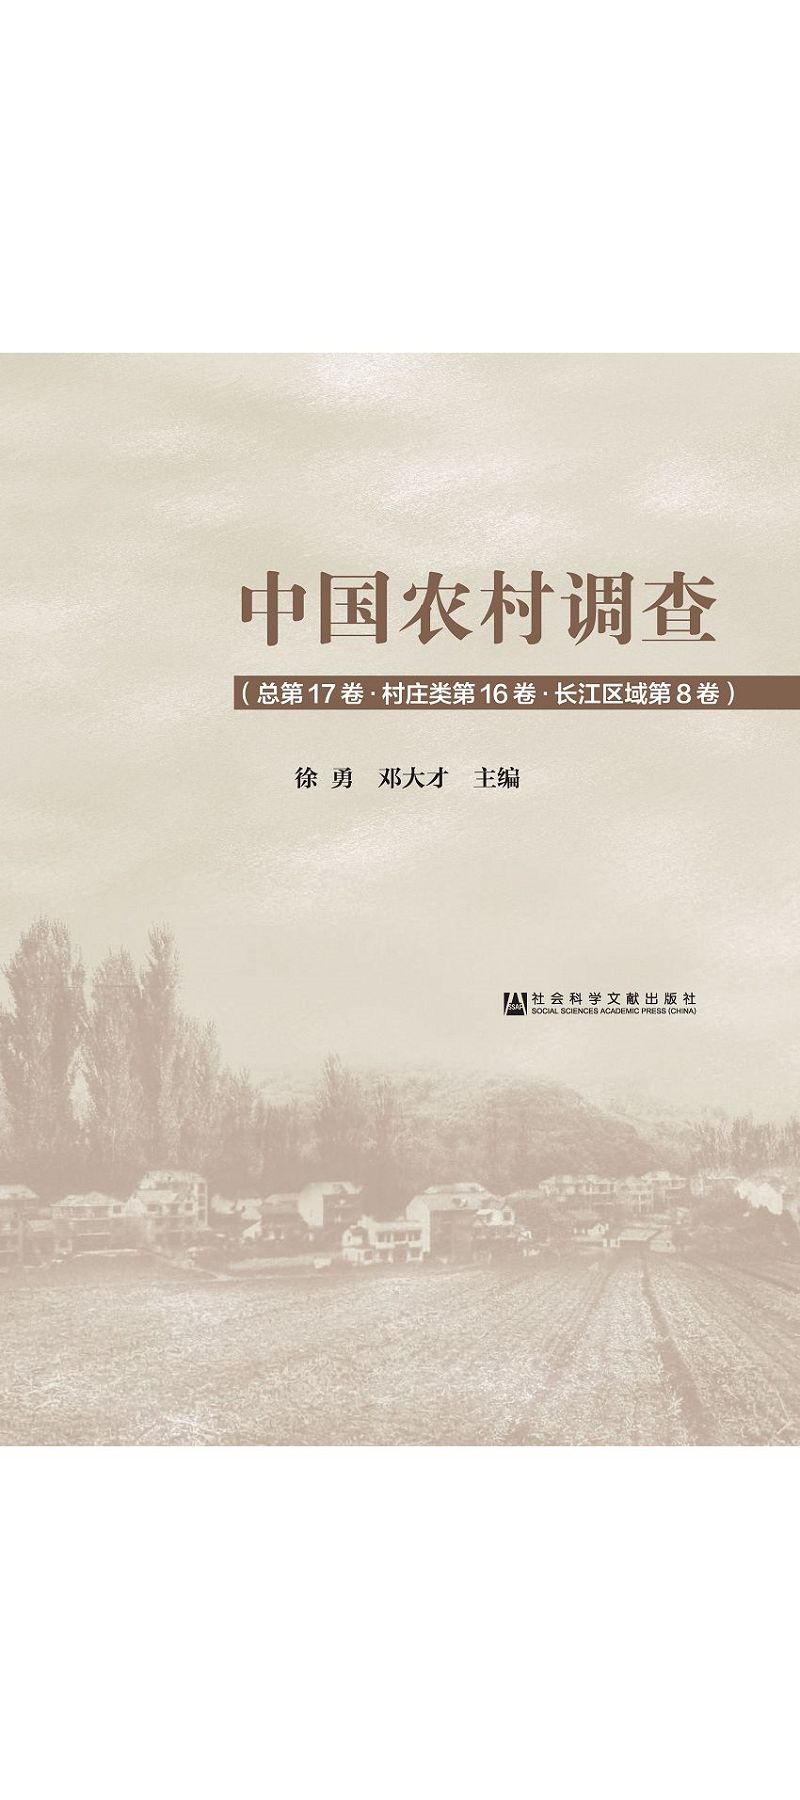 中國農村調查(總第17卷.村莊類第16卷.長江區域第8卷) (電子書)